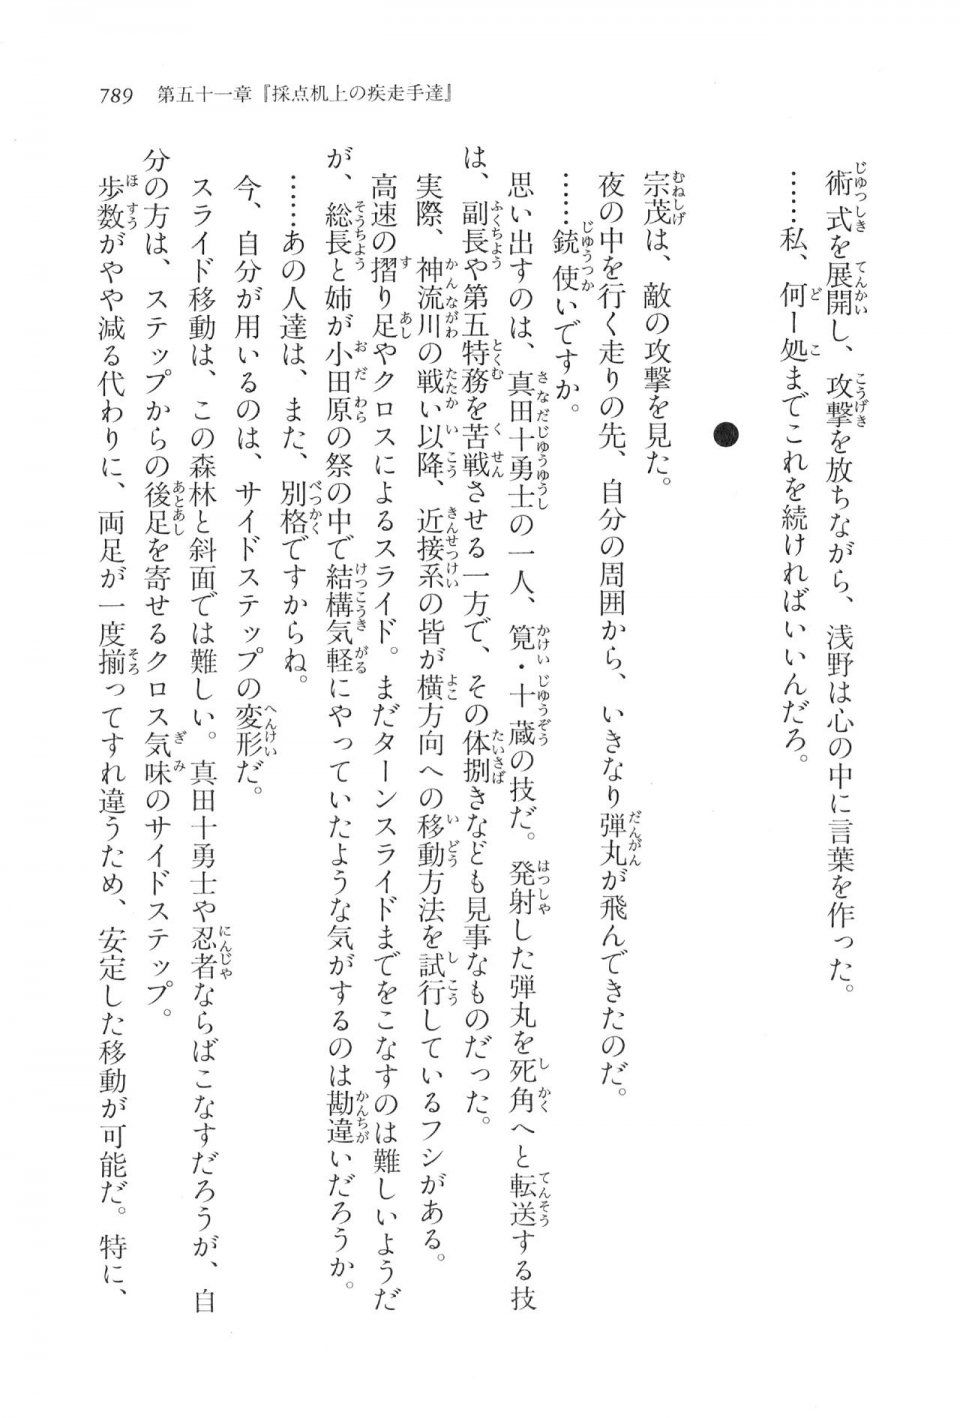 Kyoukai Senjou no Horizon LN Vol 17(7B) - Photo #791